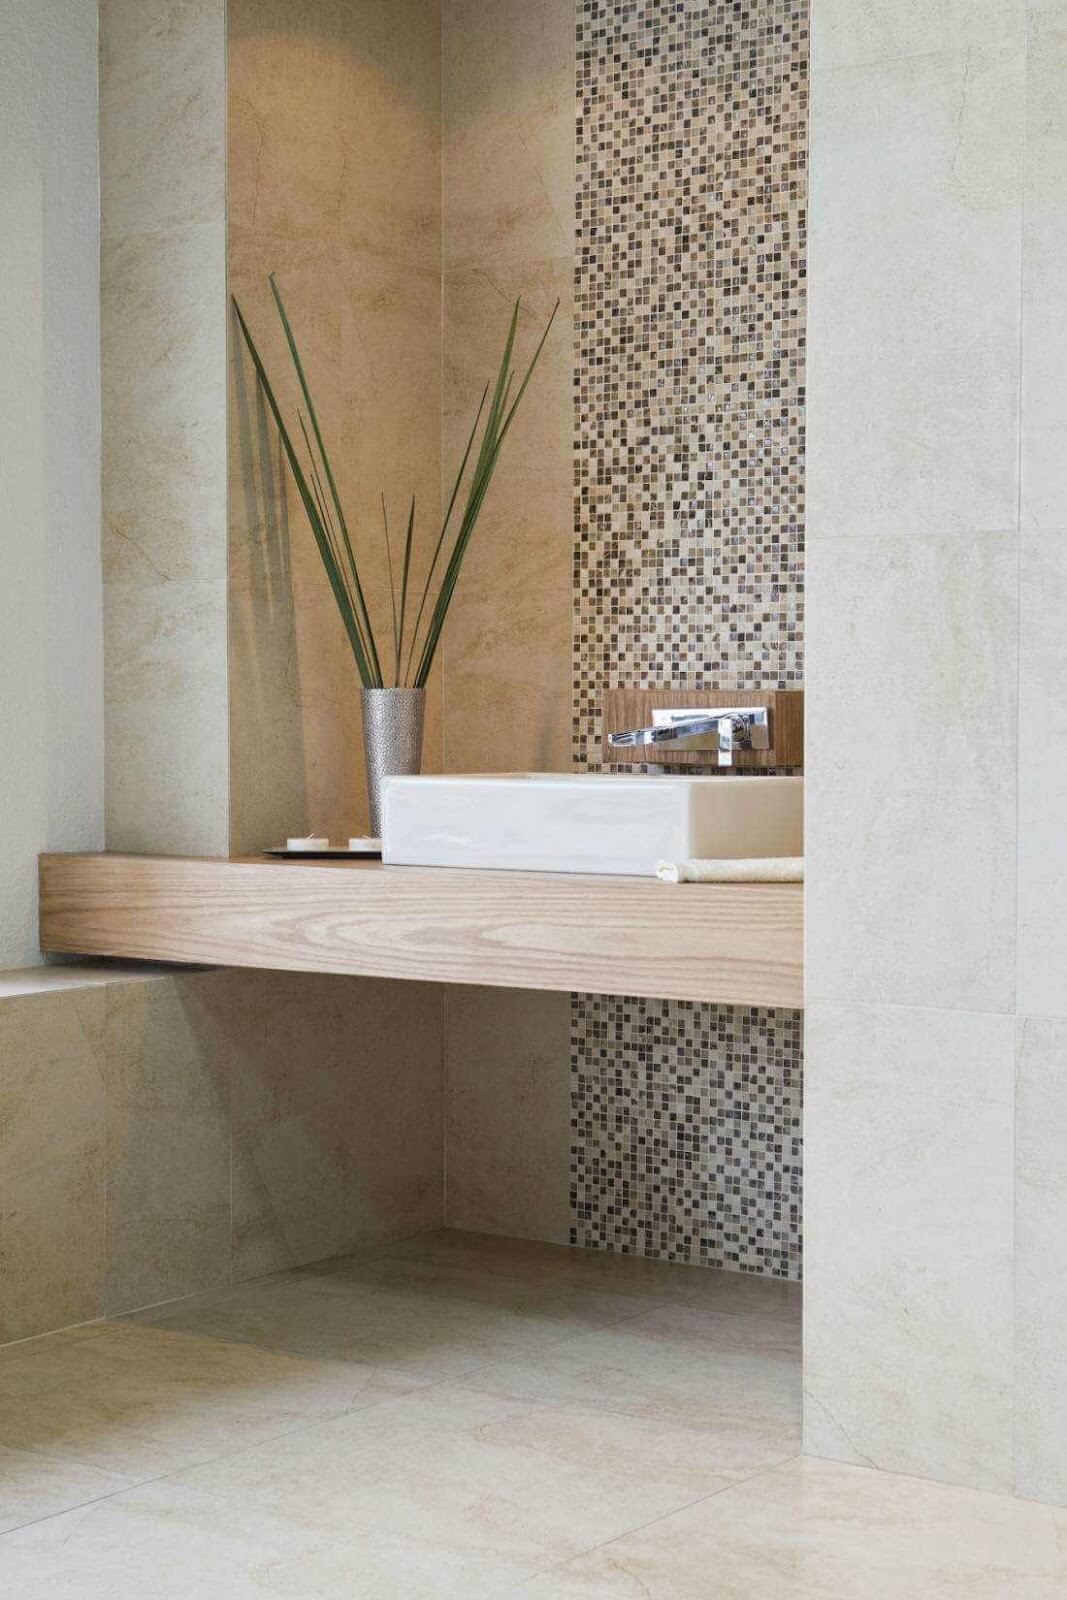 Floor and shower tile with artful ceramic tile backsplash